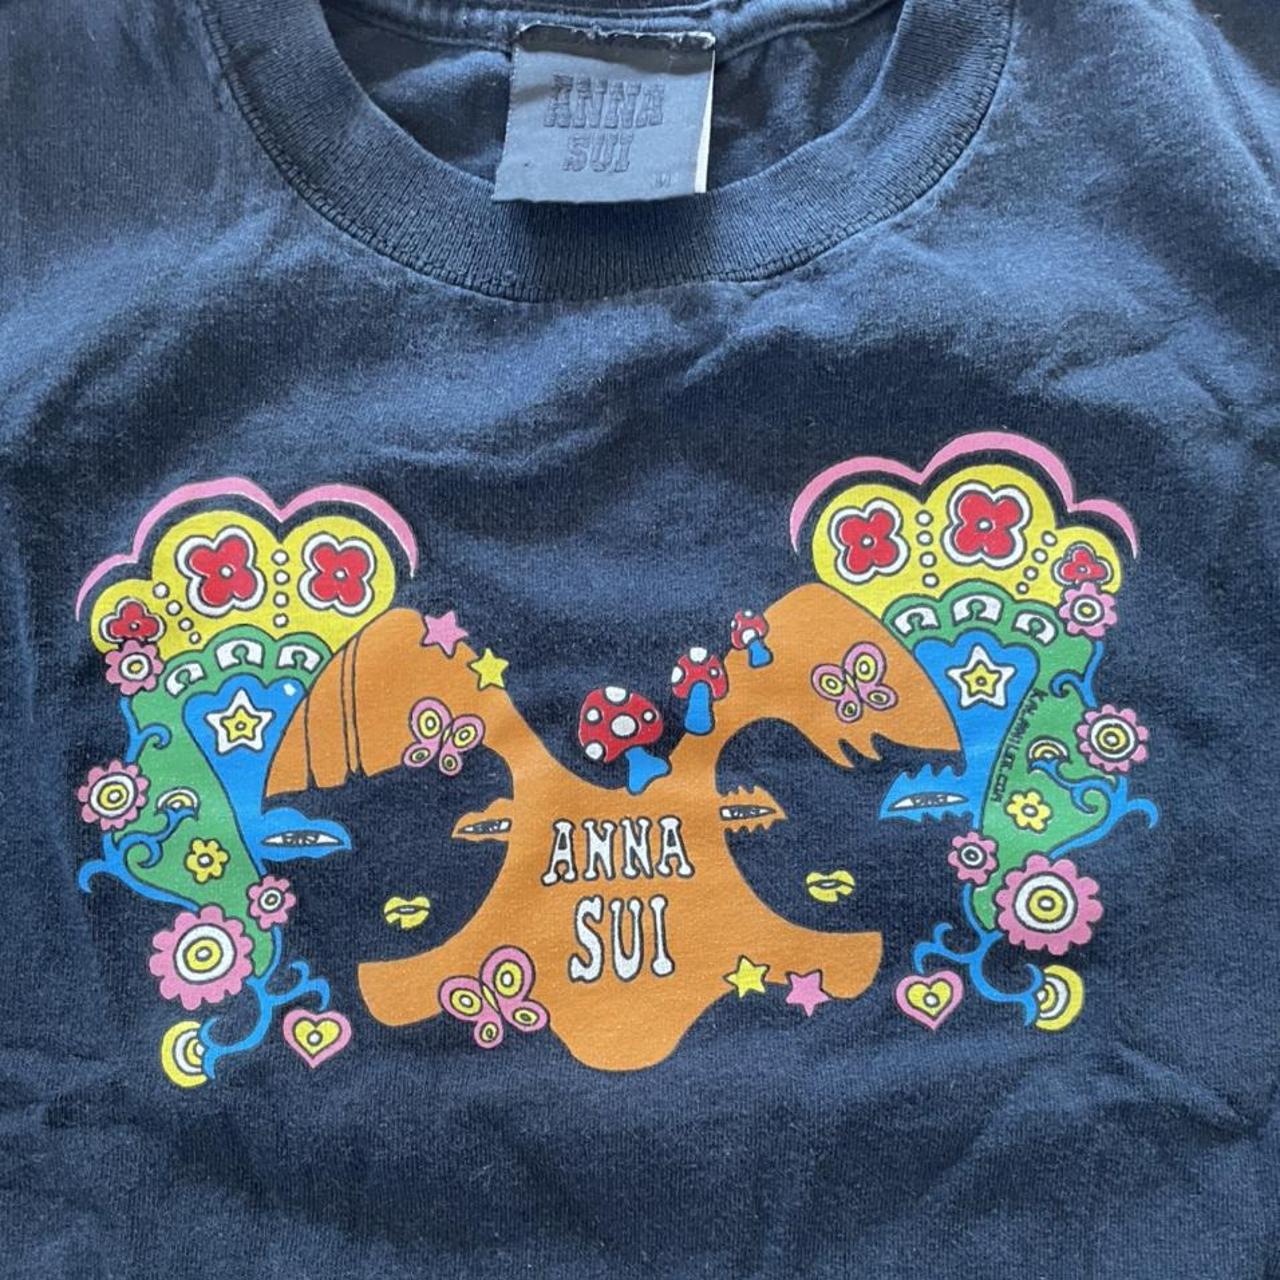 Anna Sui Women's T-shirt | Depop